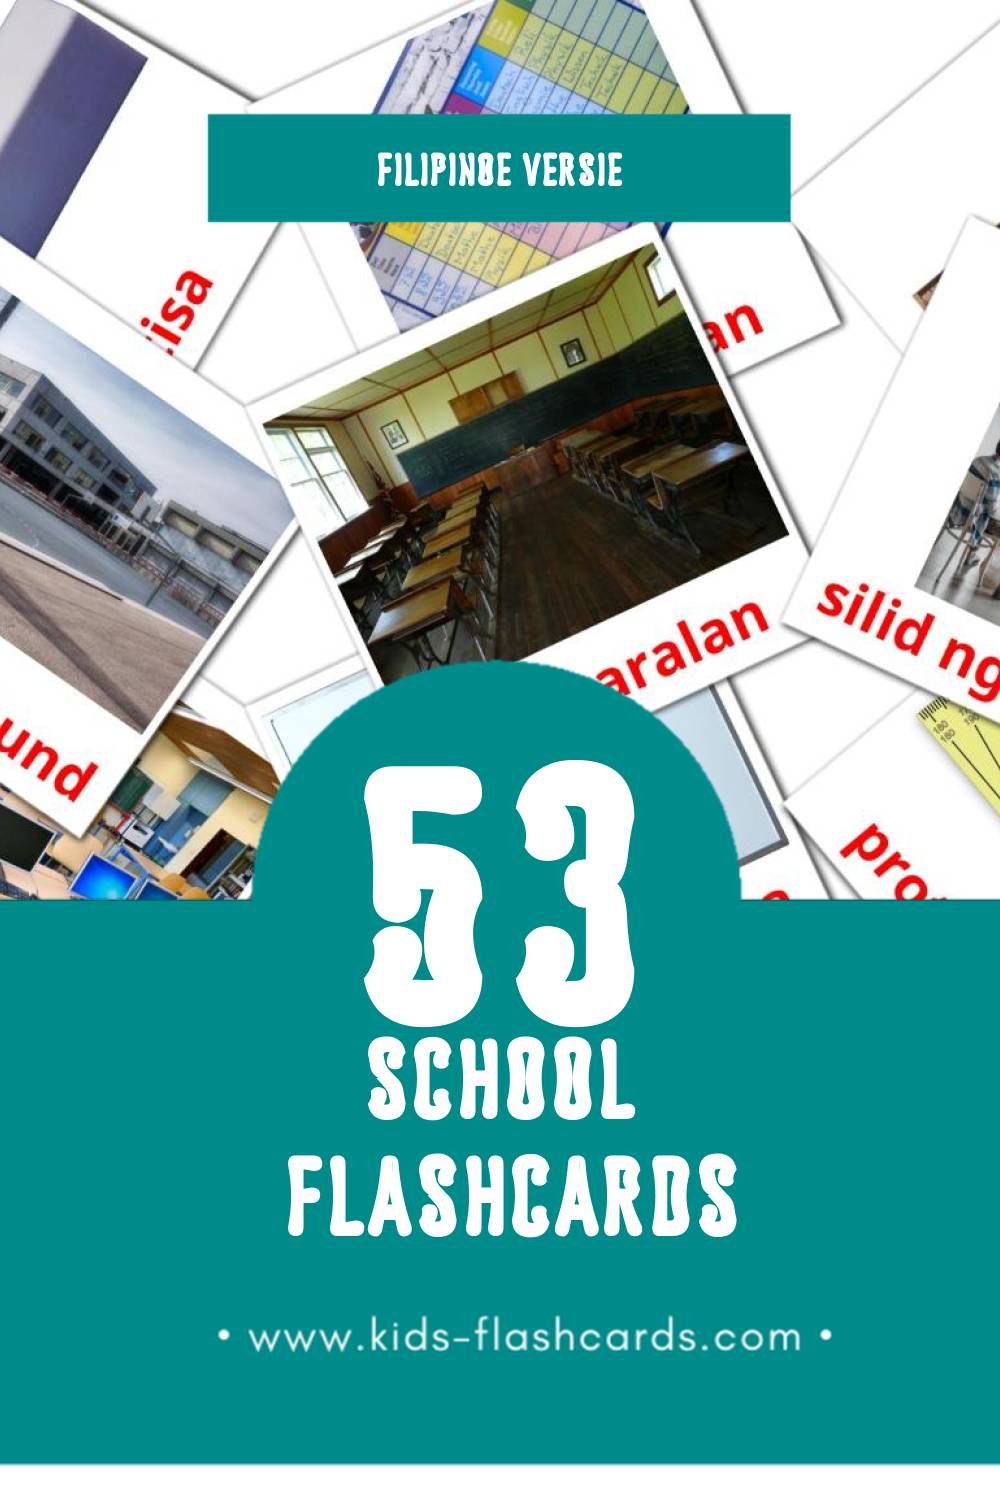 Visuele Paaralan Flashcards voor Kleuters (53 kaarten in het Filipino)